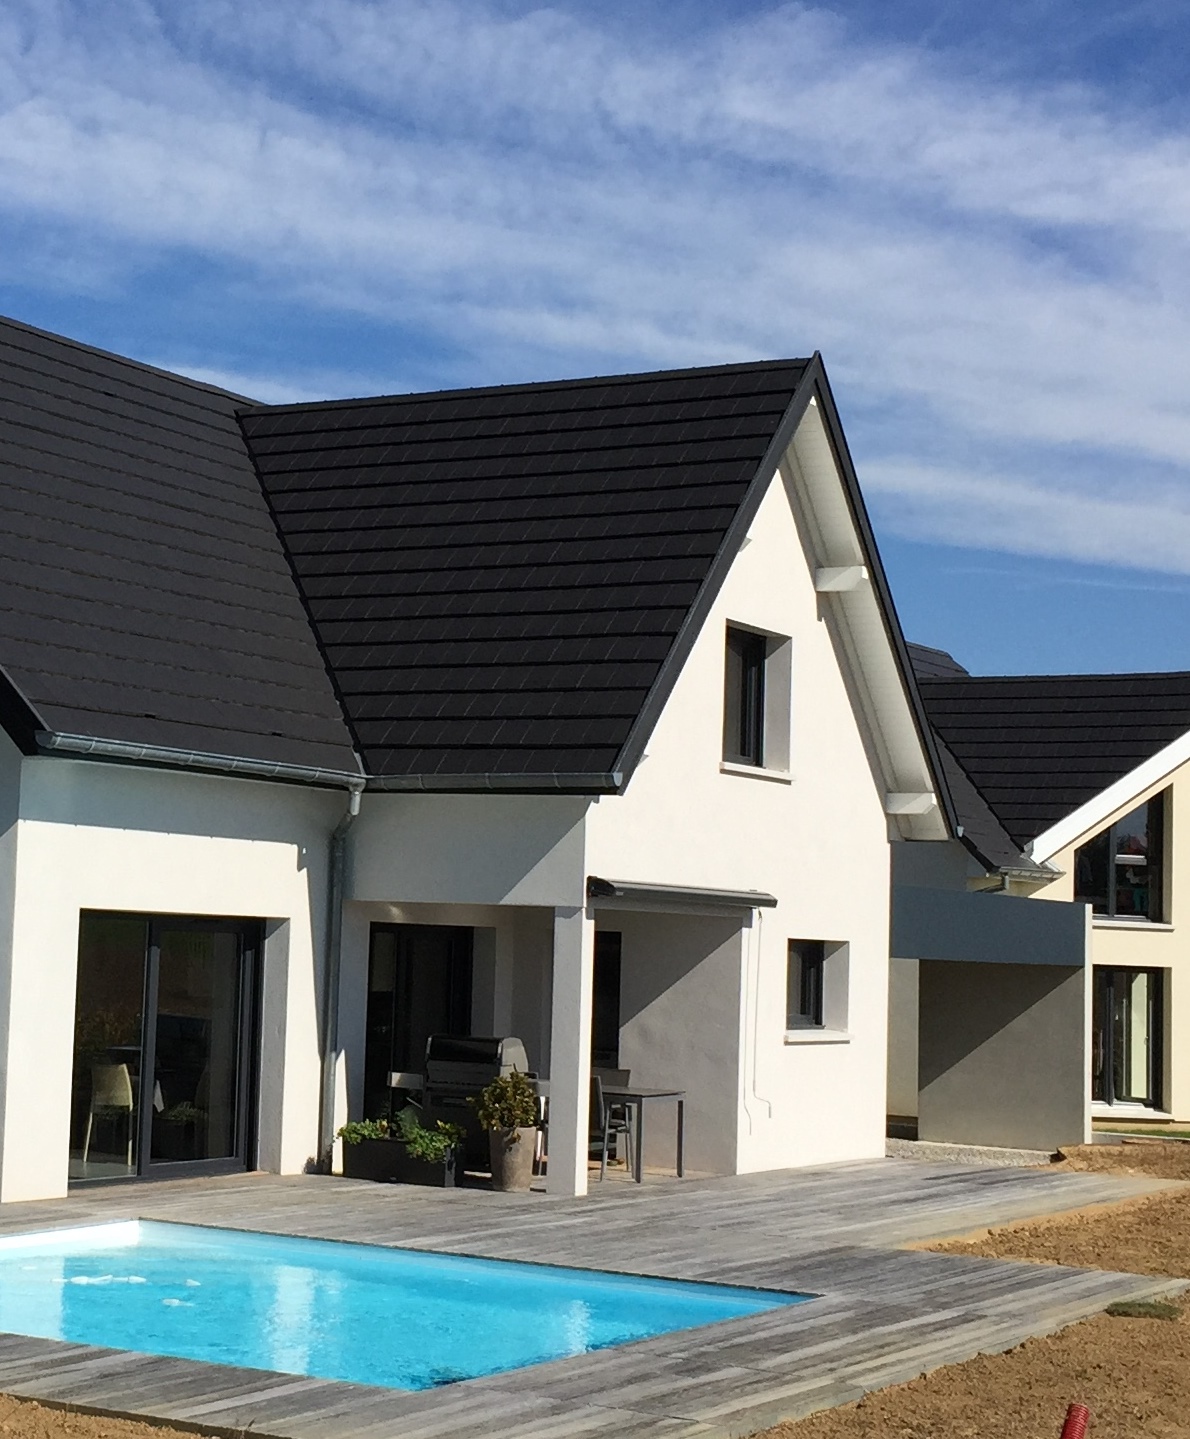 Programme immobilier neuf Maison Neuve Individuelle à Oberentzen